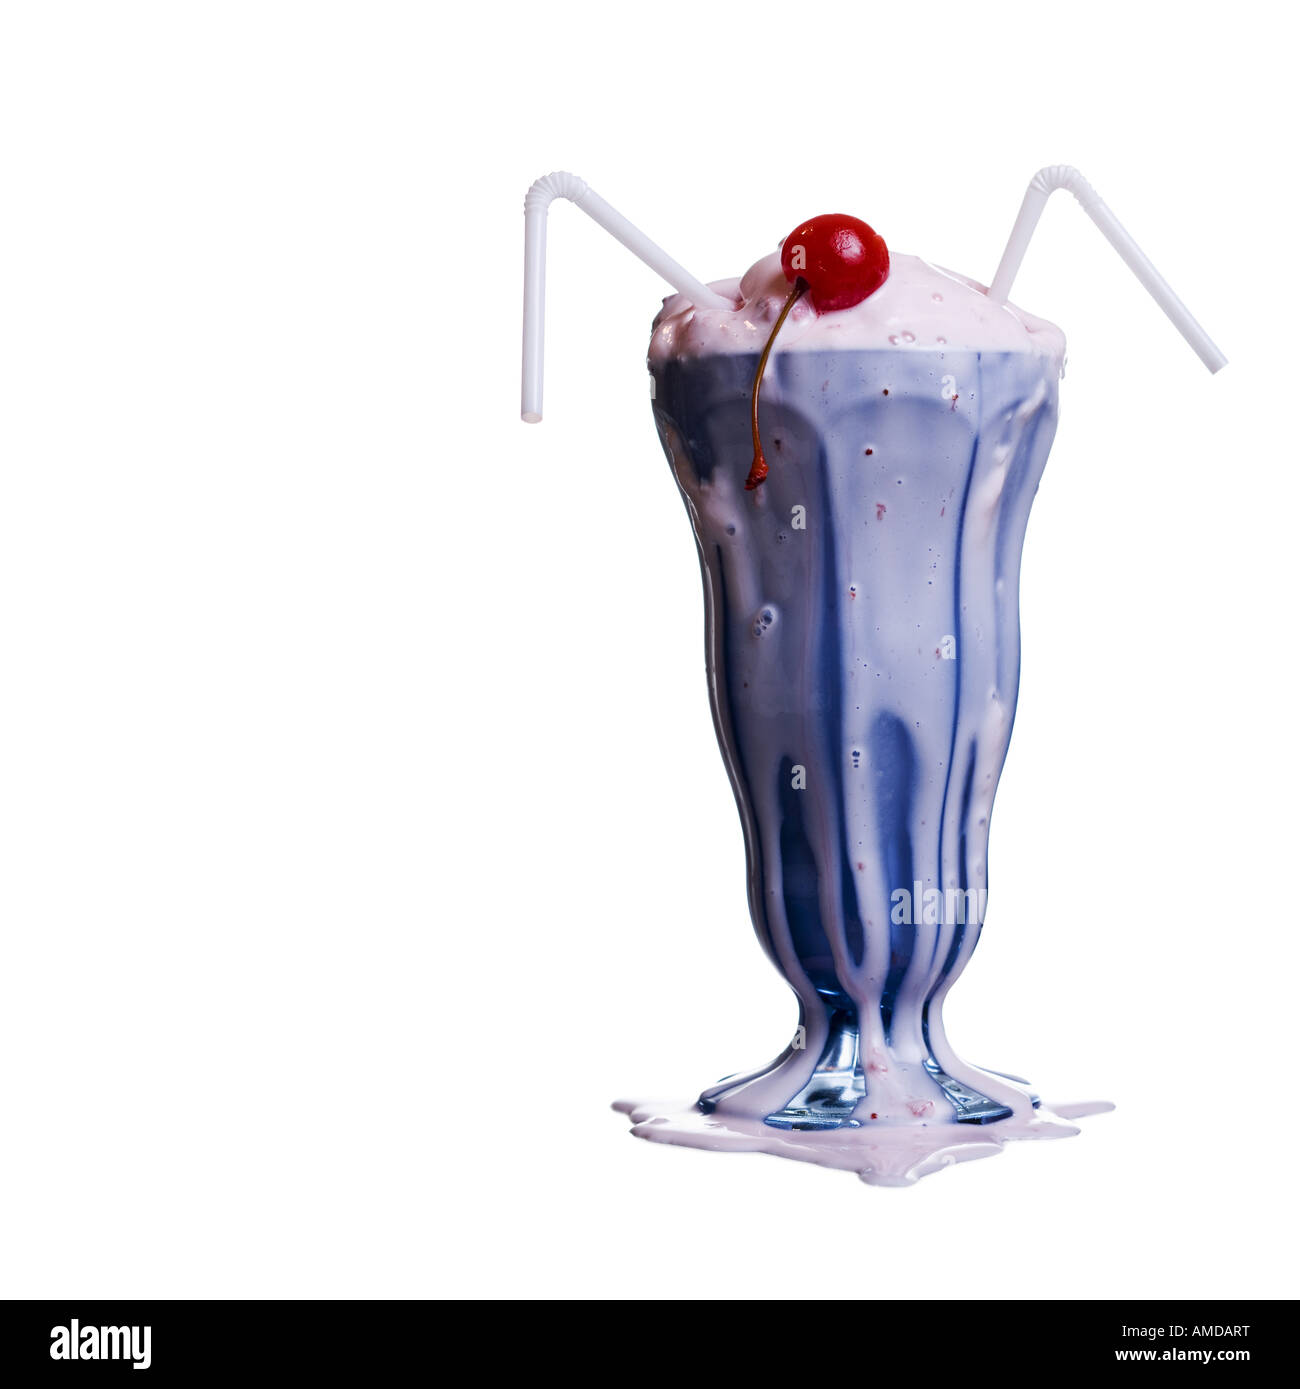 https://c8.alamy.com/comp/AMDART/melting-milkshake-with-two-straws-and-maraschino-cherry-AMDART.jpg